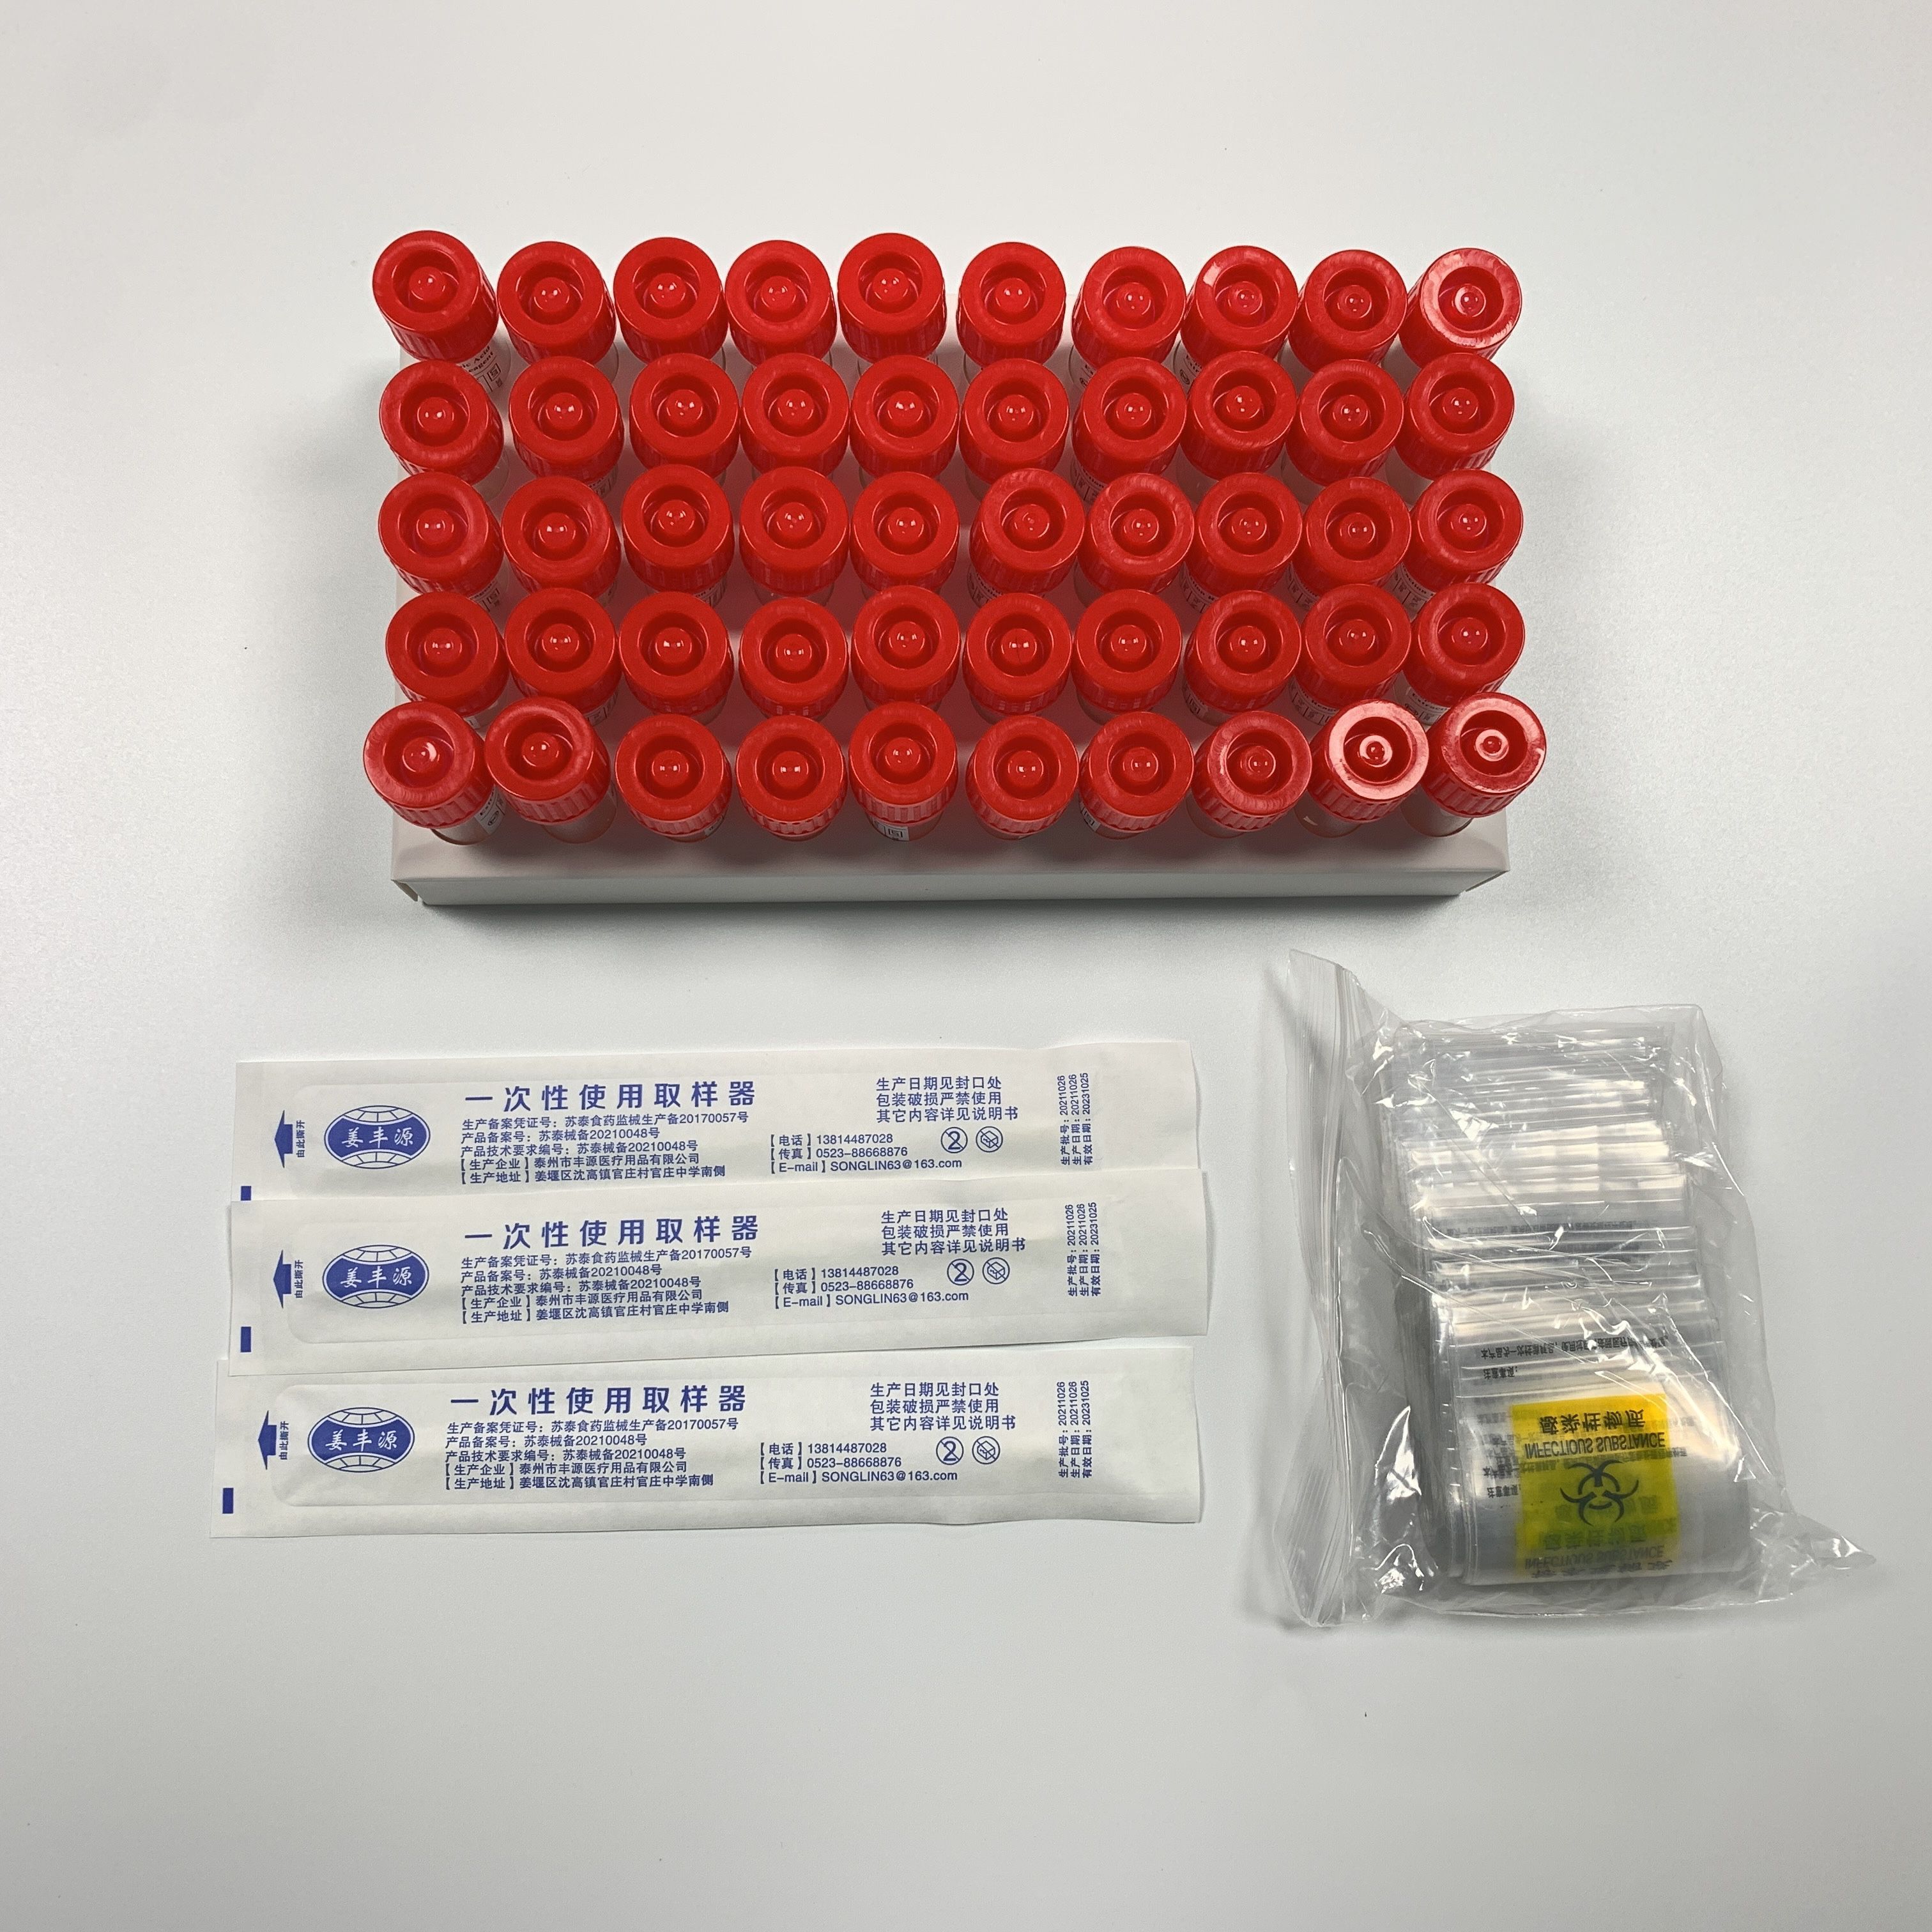 ປະເທດຈີນລາຄາຖືກ China Virus Specimen Collection Kit Inactivated or Non-inactivated Virus Sampling Tube ຜູ້ຜະລິດແລະຜູ້ສະຫນອງ |ຈຽນມາ